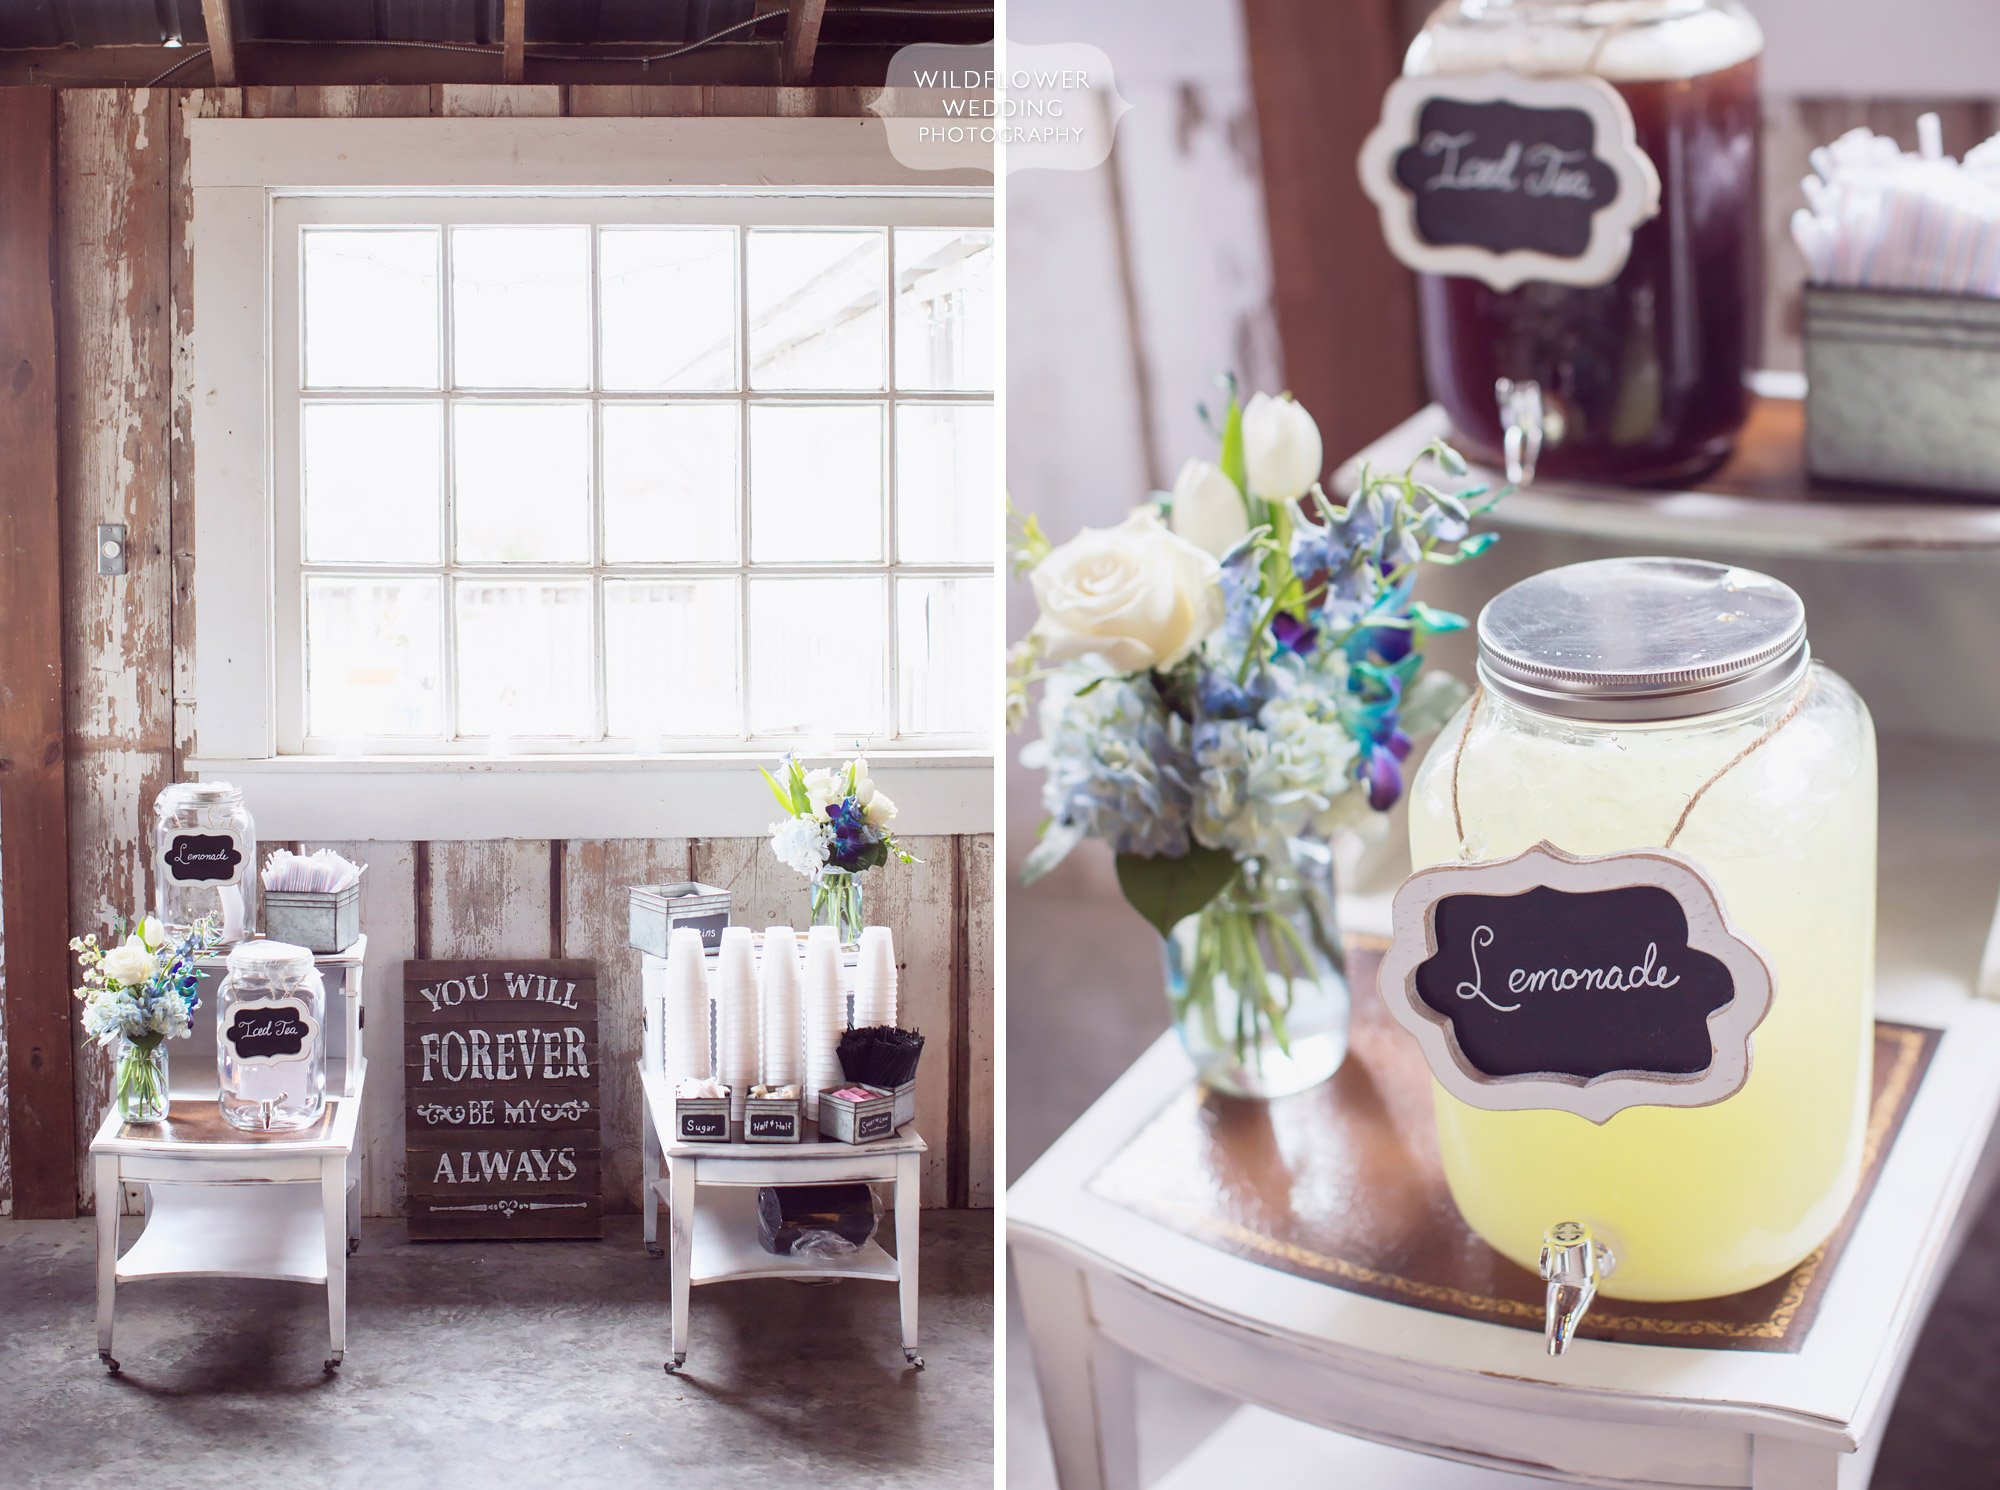 Simple decor ideas for a farm or barn wedding with side tables with lemonade and iced tea.